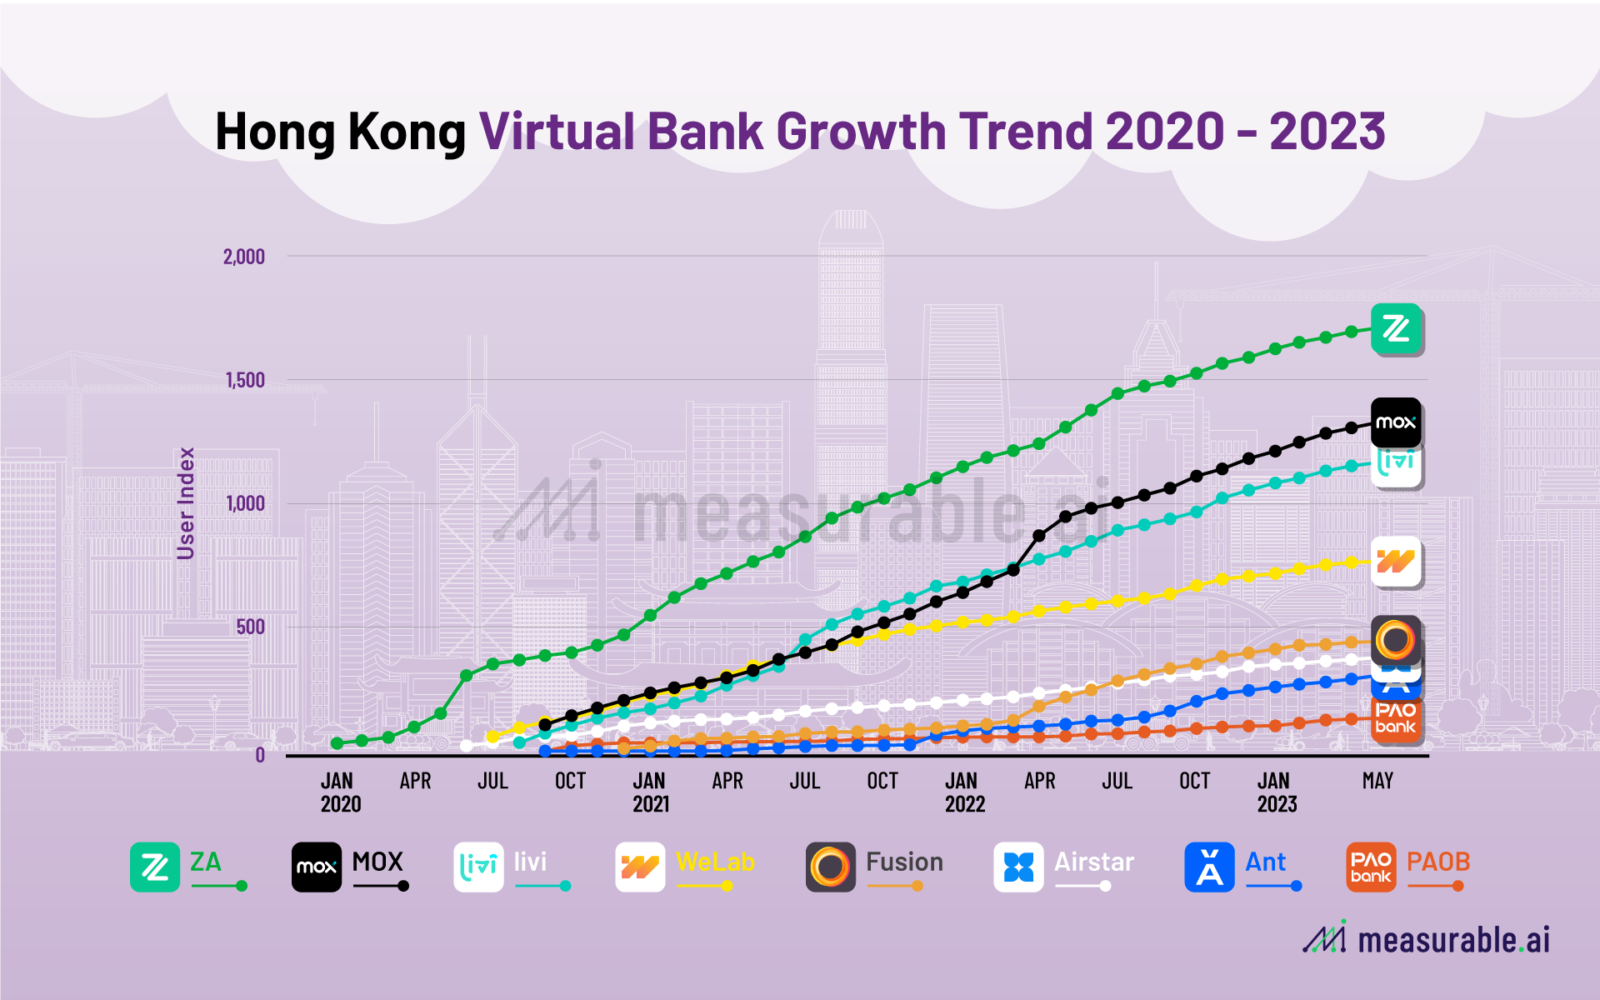 Hong Kong Virtual Bank Growth Trend 2020-2023